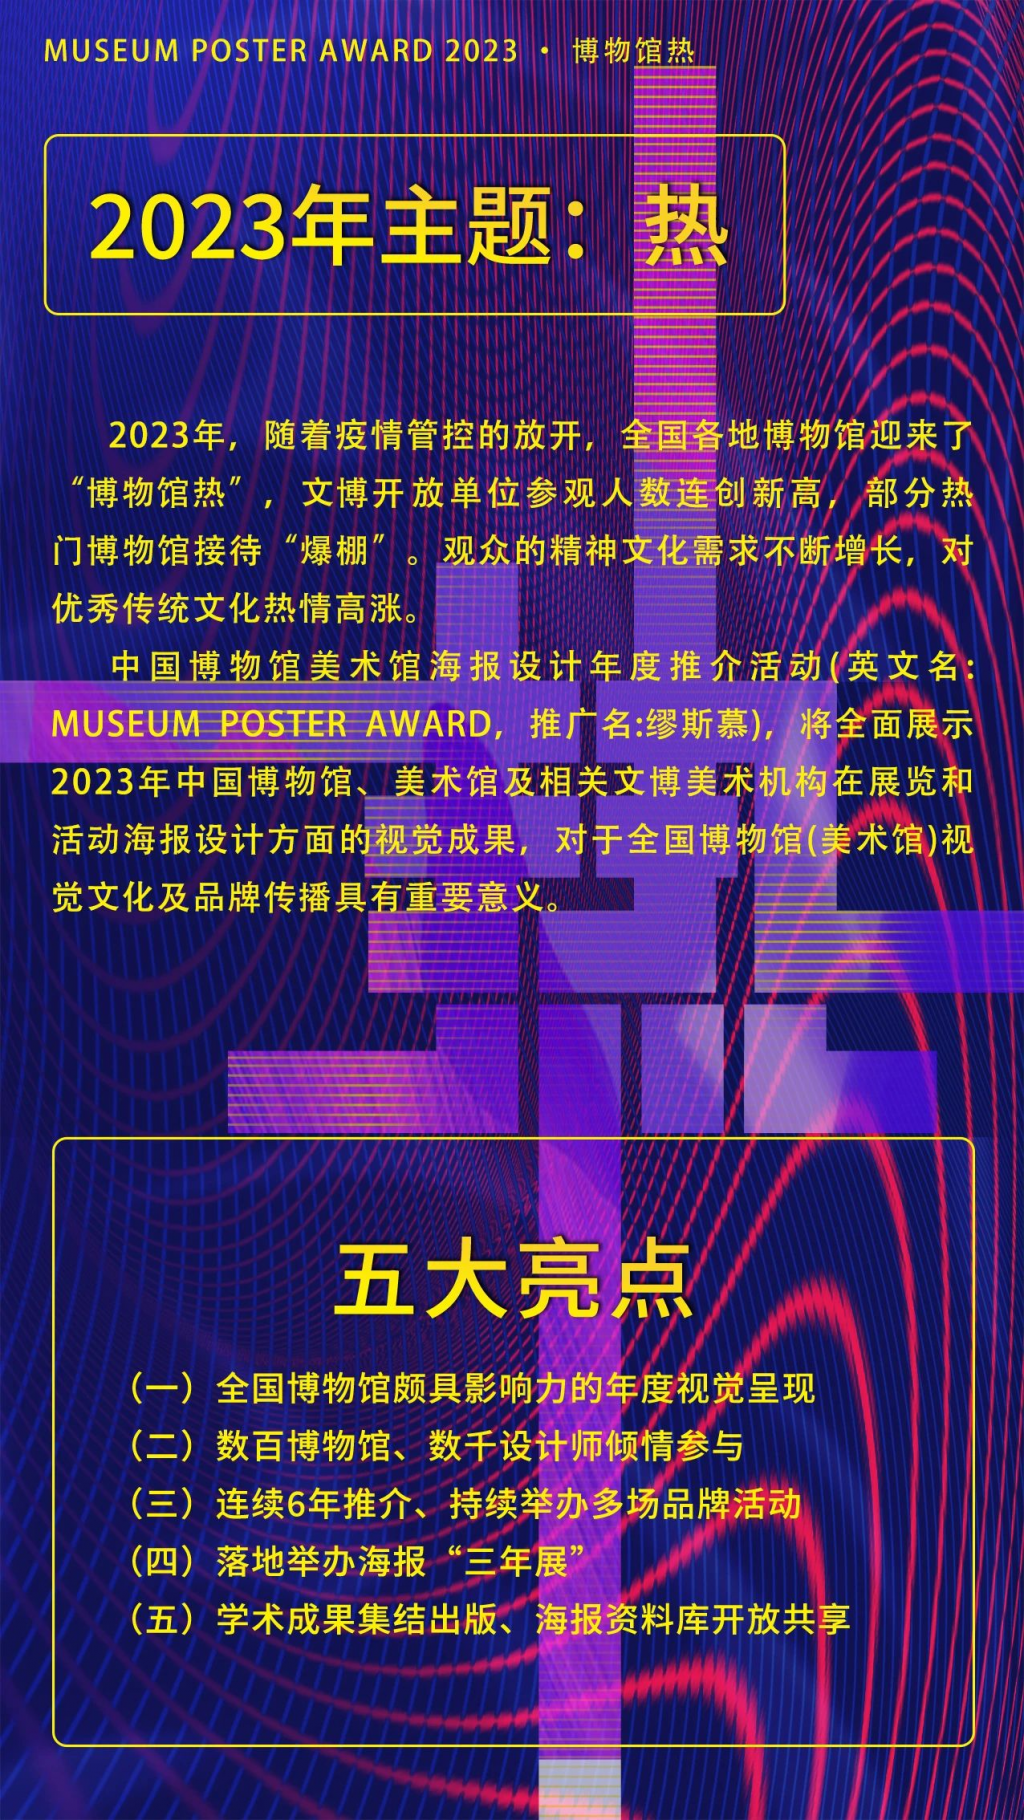 2023年中国博物馆美术馆海报设计年度推介活动征集公告